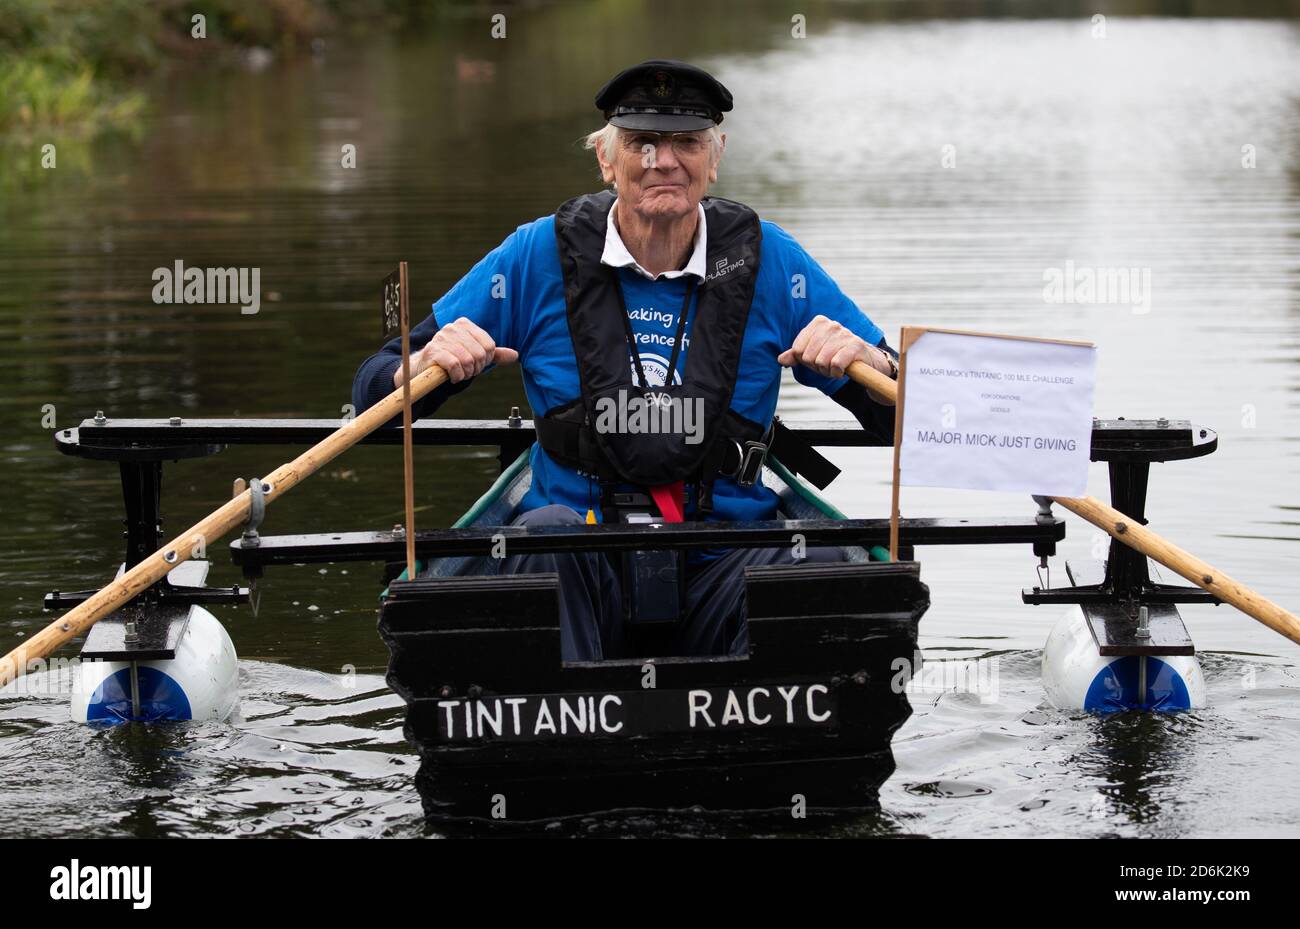 Michael Stanley, der auch als "Major Mick" bekannt ist, macht sich auf den Weg von Hunston, West Sussex, um in seinem selbstgemachten Ruderboot, dem Tintanic, am Chichester-Kanal entlang zu rudern. Major Mick, 80, rudert entlang des Chichester Kanals für eine 100 Meilen lange Charity Challenge, die 3 Meilen auf einmal zurückgelegt wird, um Geld für das St. Wilfrid's Hospiz in Bosham zu sammeln. Stockfoto